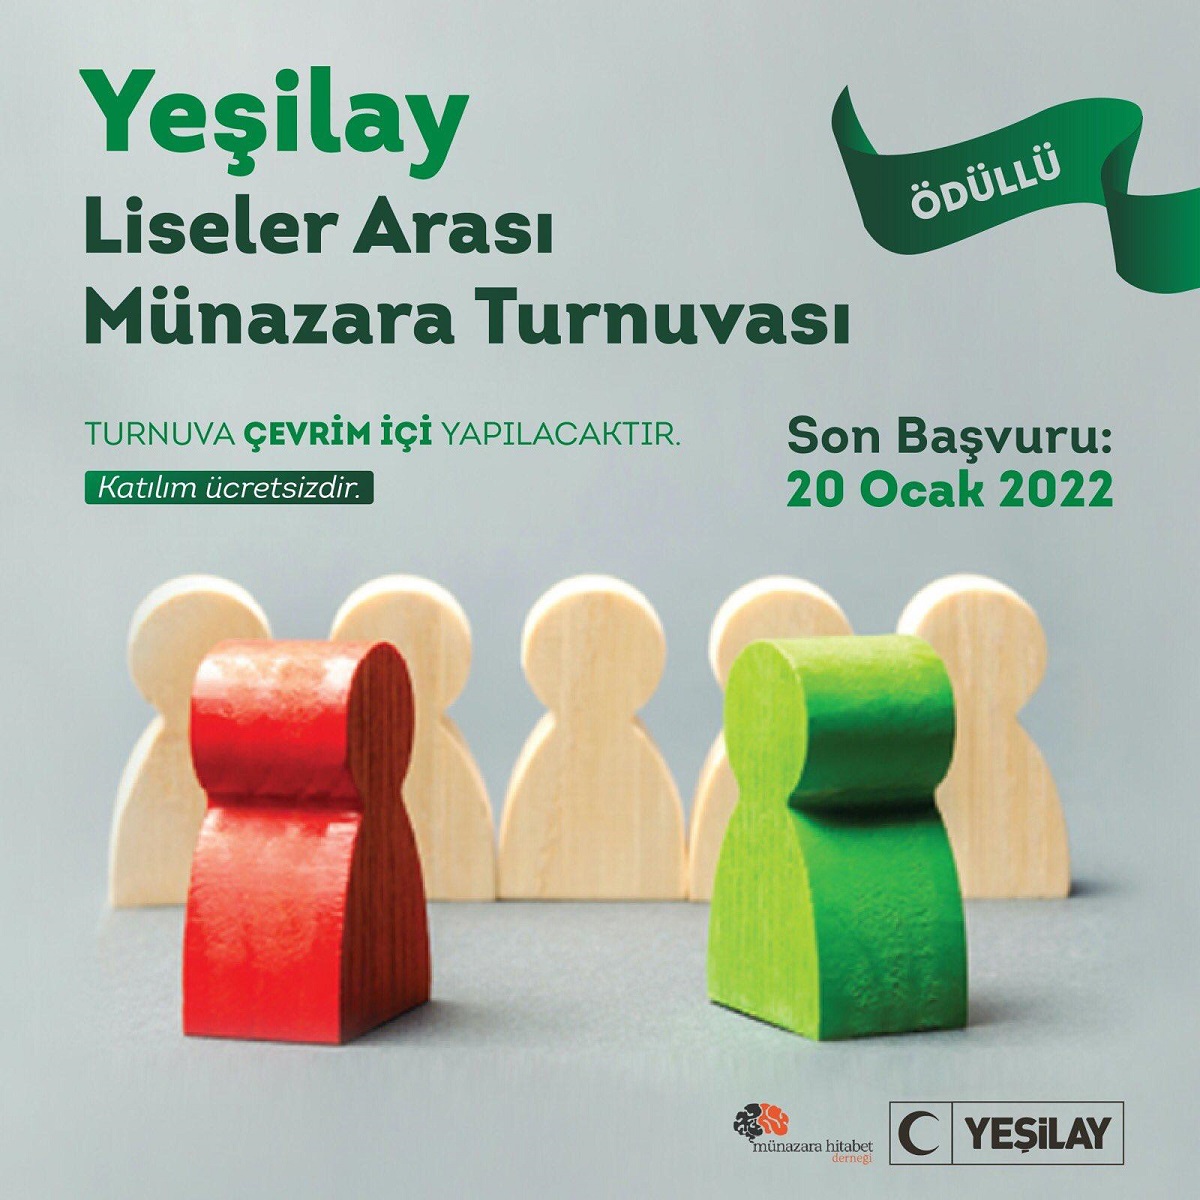 Yeşilay Türkiye Liseler arası münazara turnuvası başlıyor